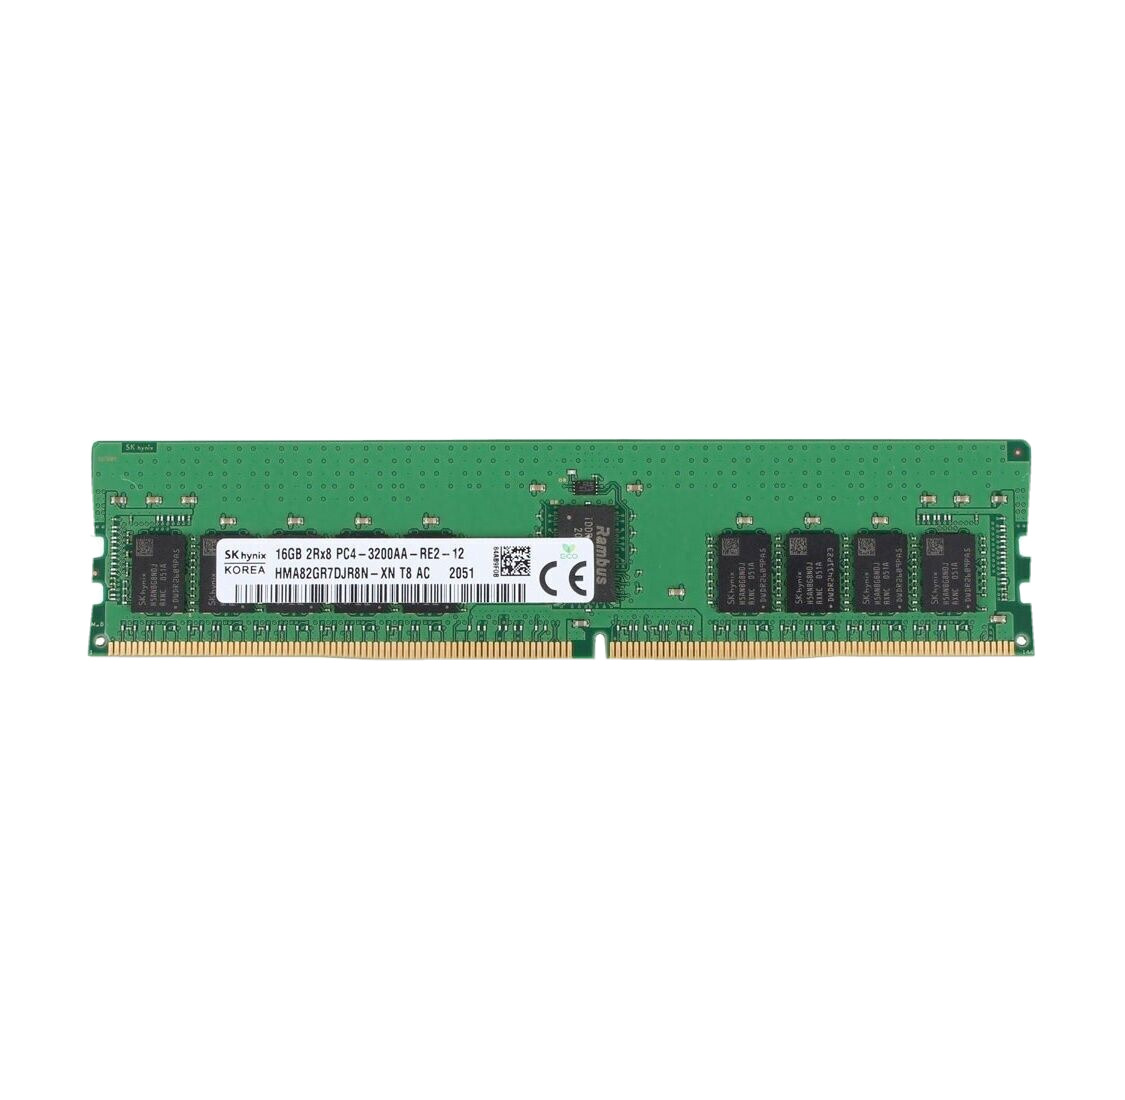 SK Hynix 16GB DDR4-3200 RDIMM PC4-25600R 2Rx8 Module HMA82GR7DJR8N-XN